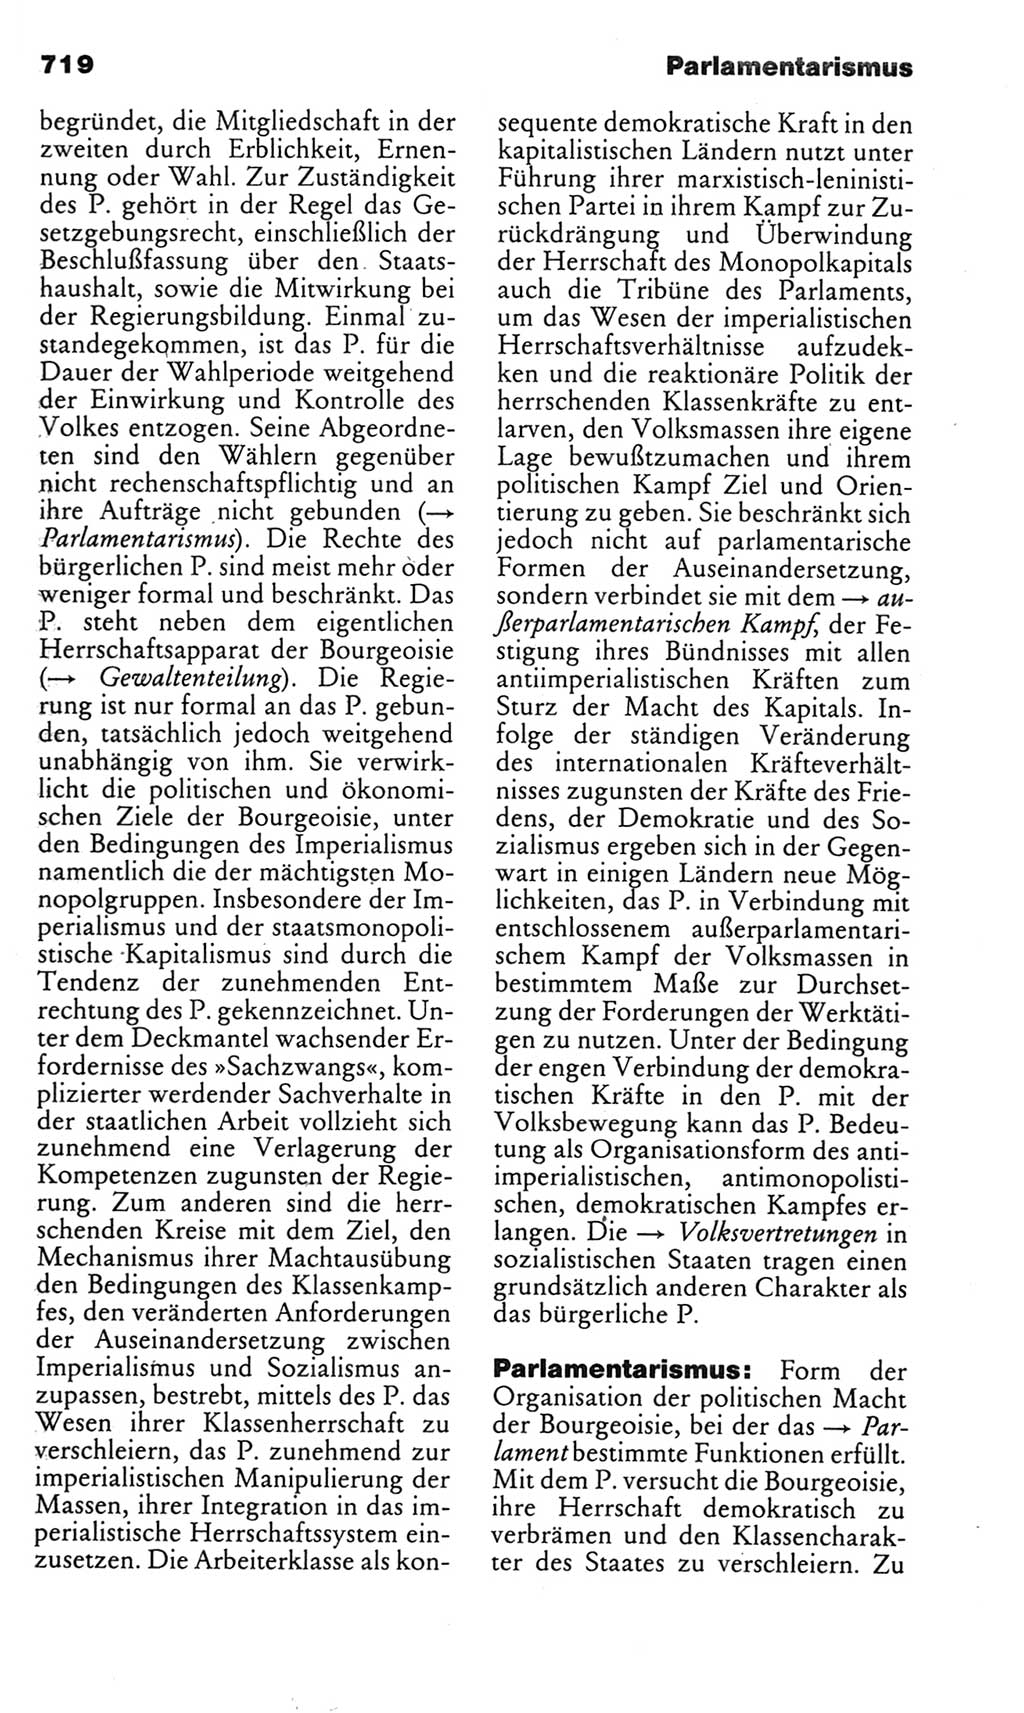 Kleines politisches Wörterbuch [Deutsche Demokratische Republik (DDR)] 1985, Seite 719 (Kl. pol. Wb. DDR 1985, S. 719)